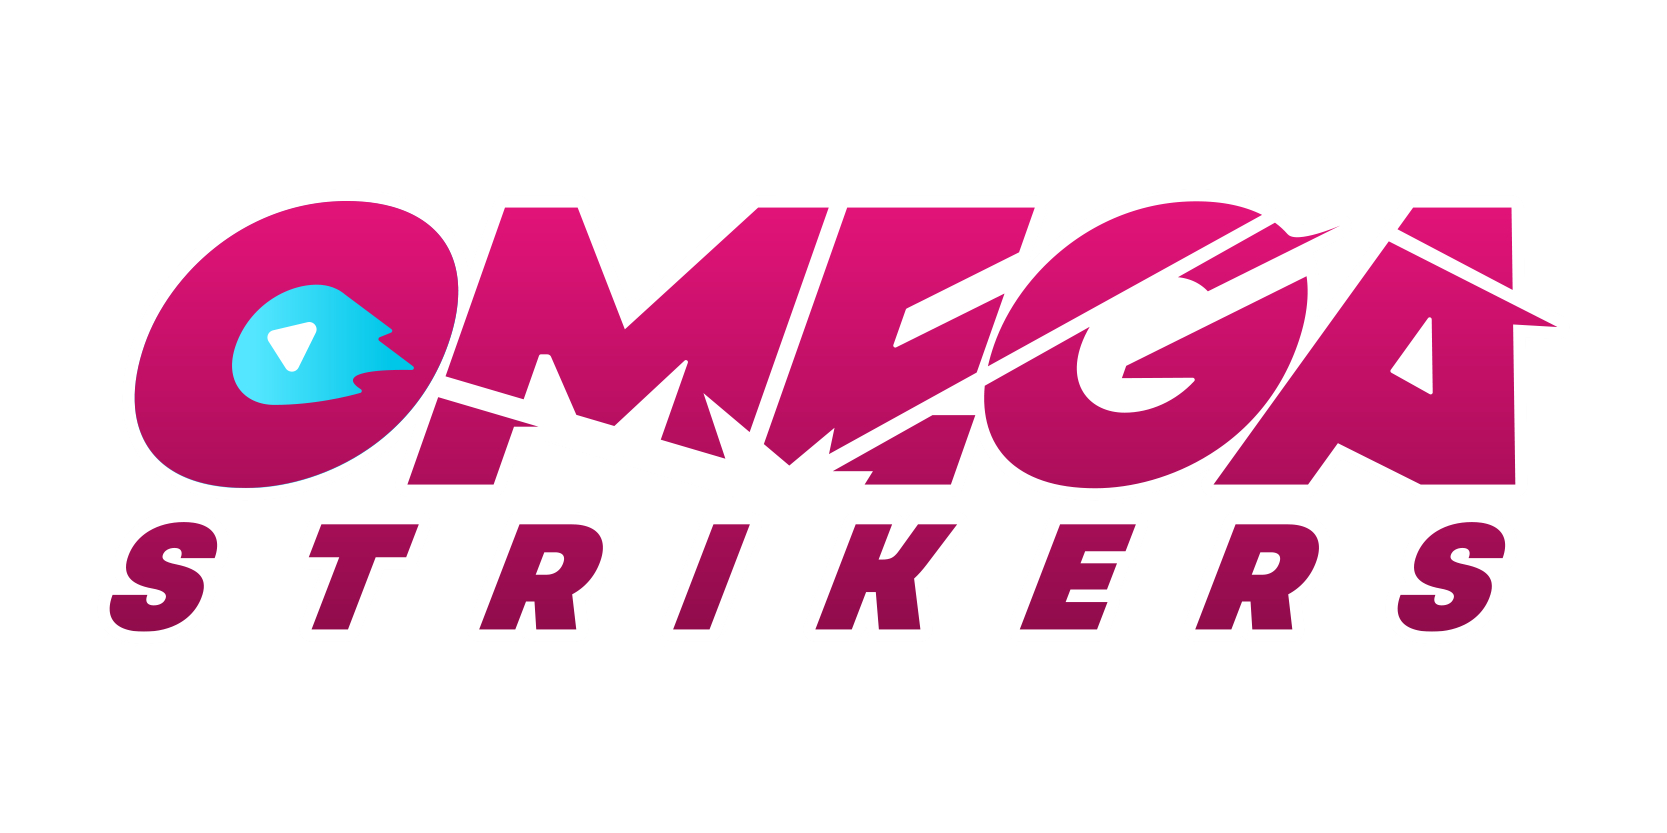 Como a Odyssey Interactive lançou Omega Strikers, um jogo com